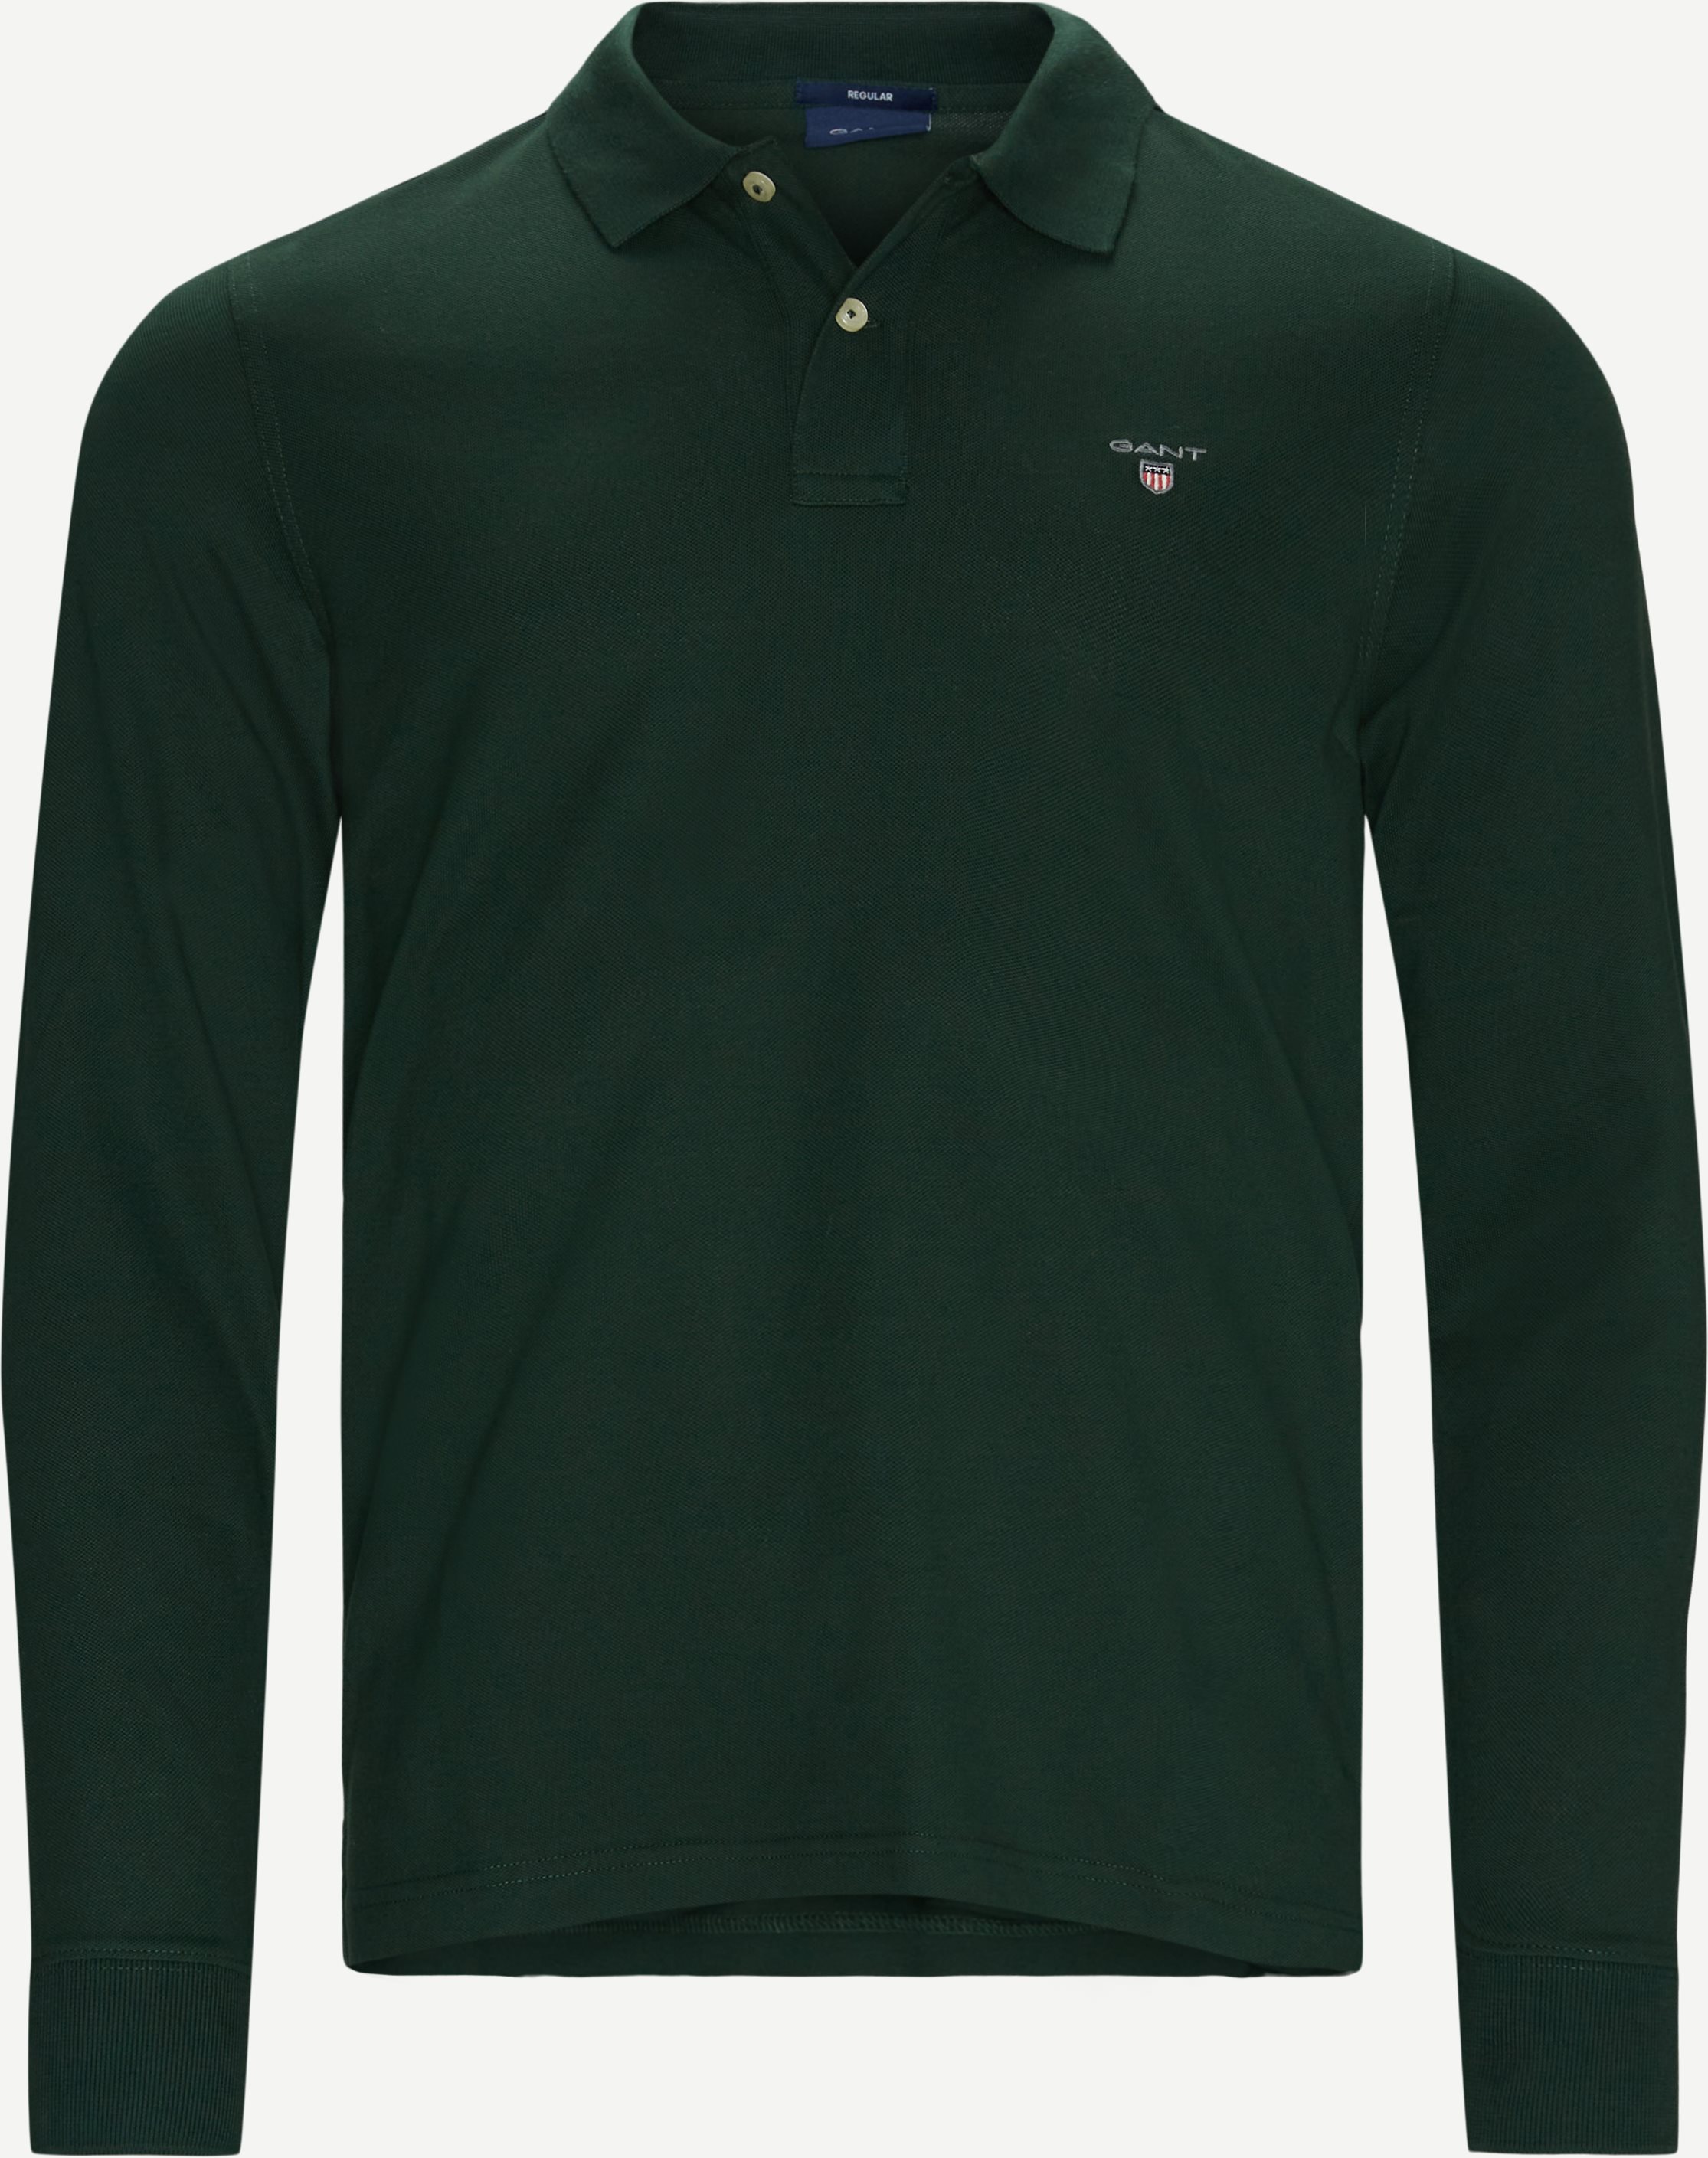 Orginal Pique Longsleeve Rugger - T-shirts - Regular fit - Green